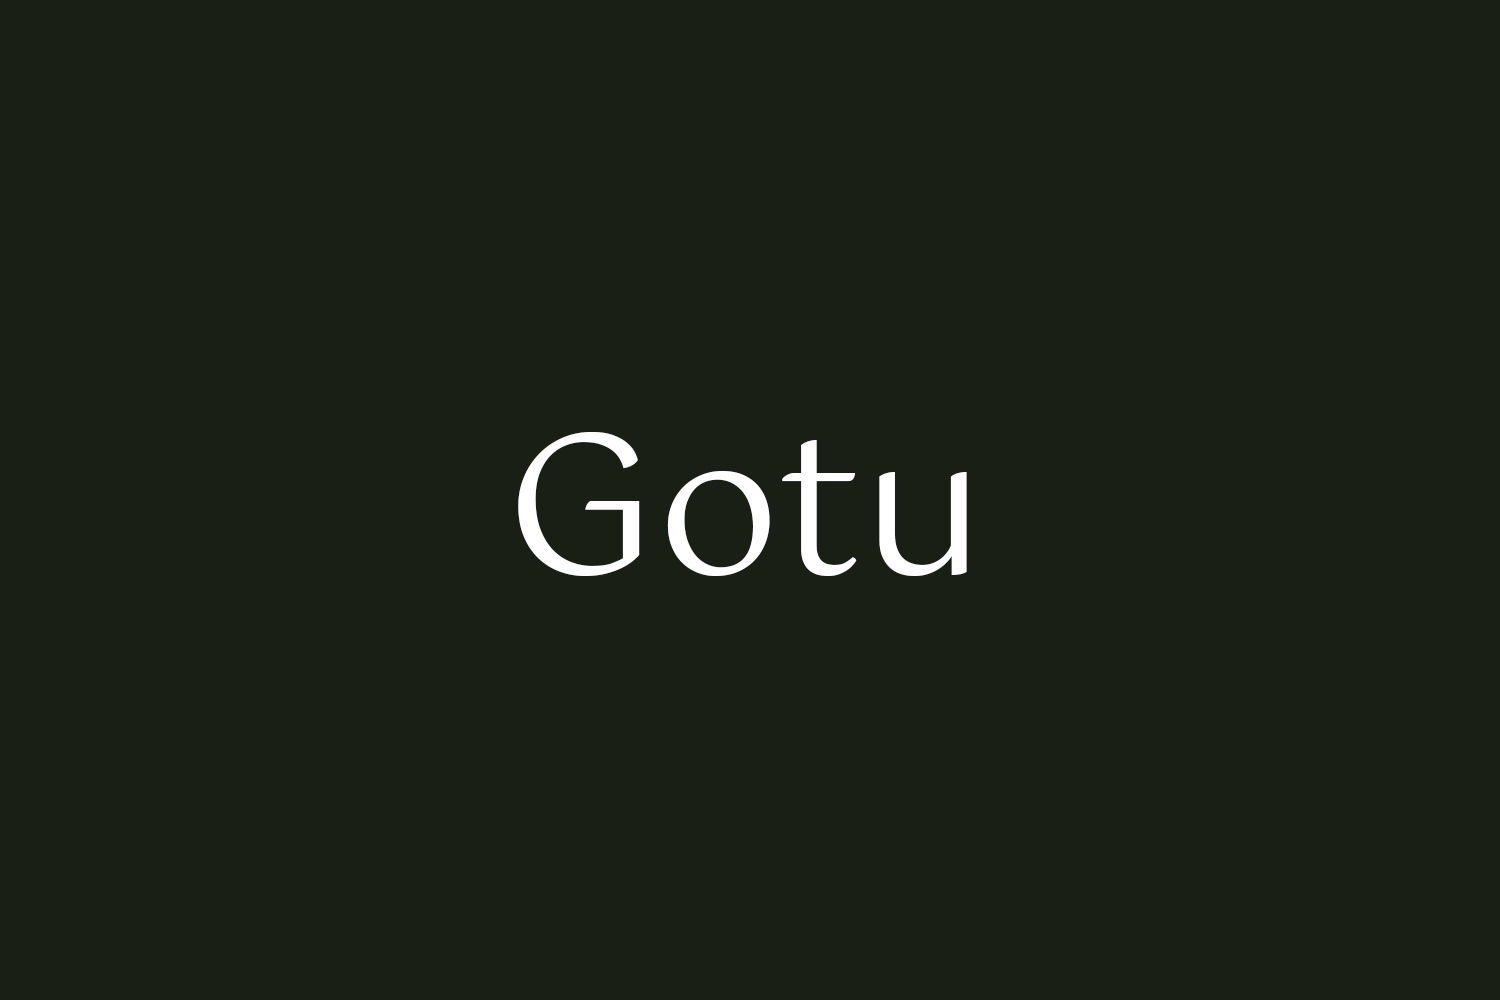 Gotu